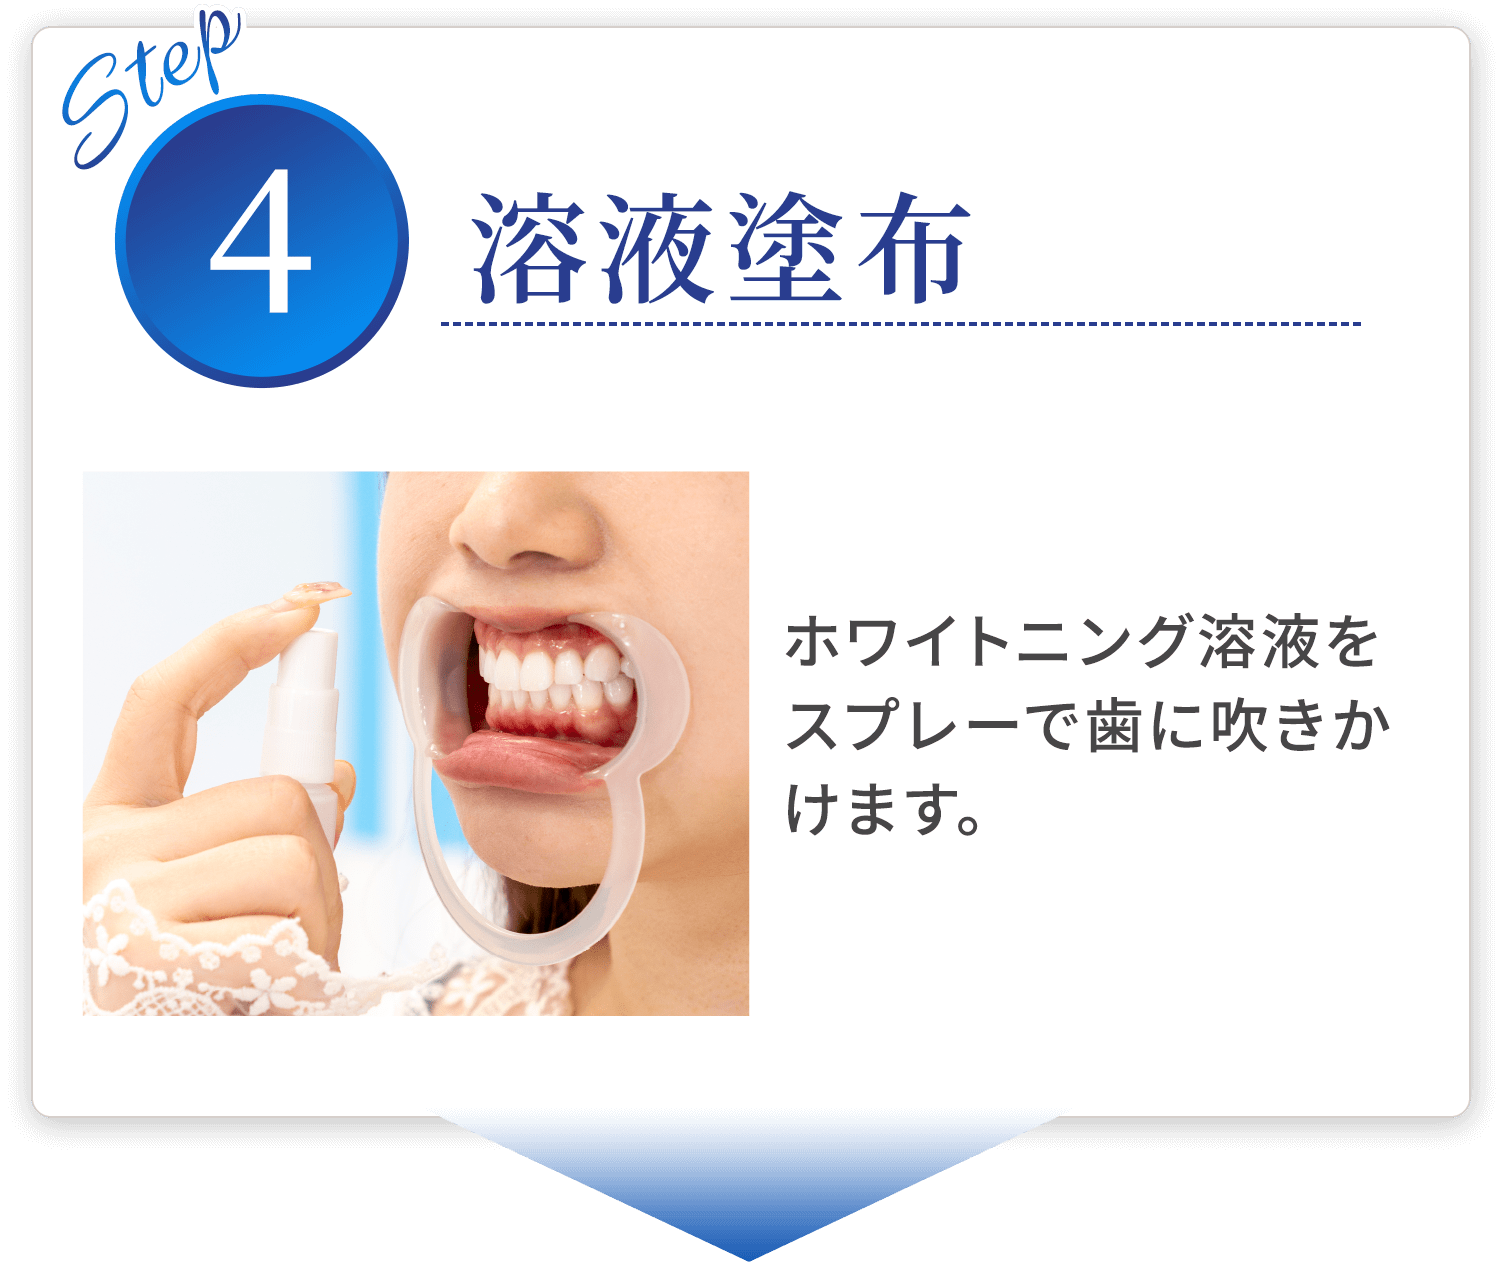 step04 溶液塗布 ホワイトニング溶液をスプレーで歯に吹きかけます。